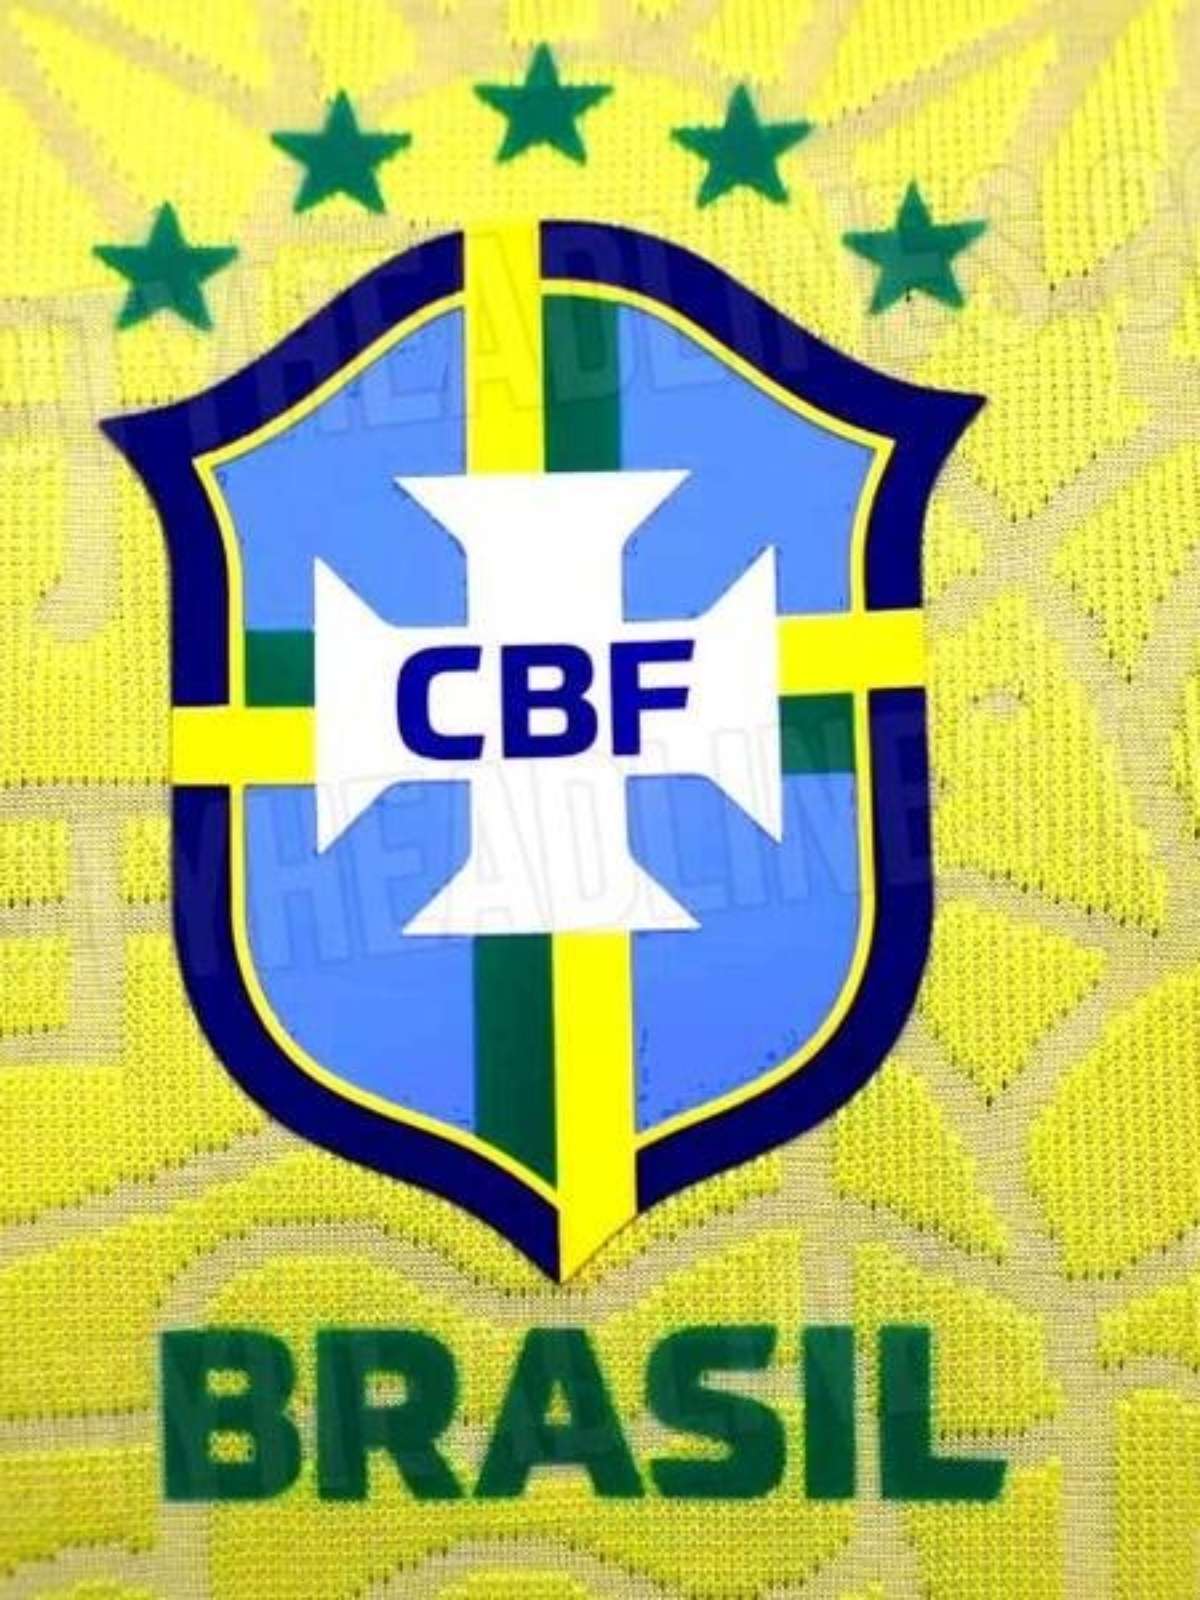 Copa do Mundo: vaza suposta camisa da Seleção Brasileira; reveja